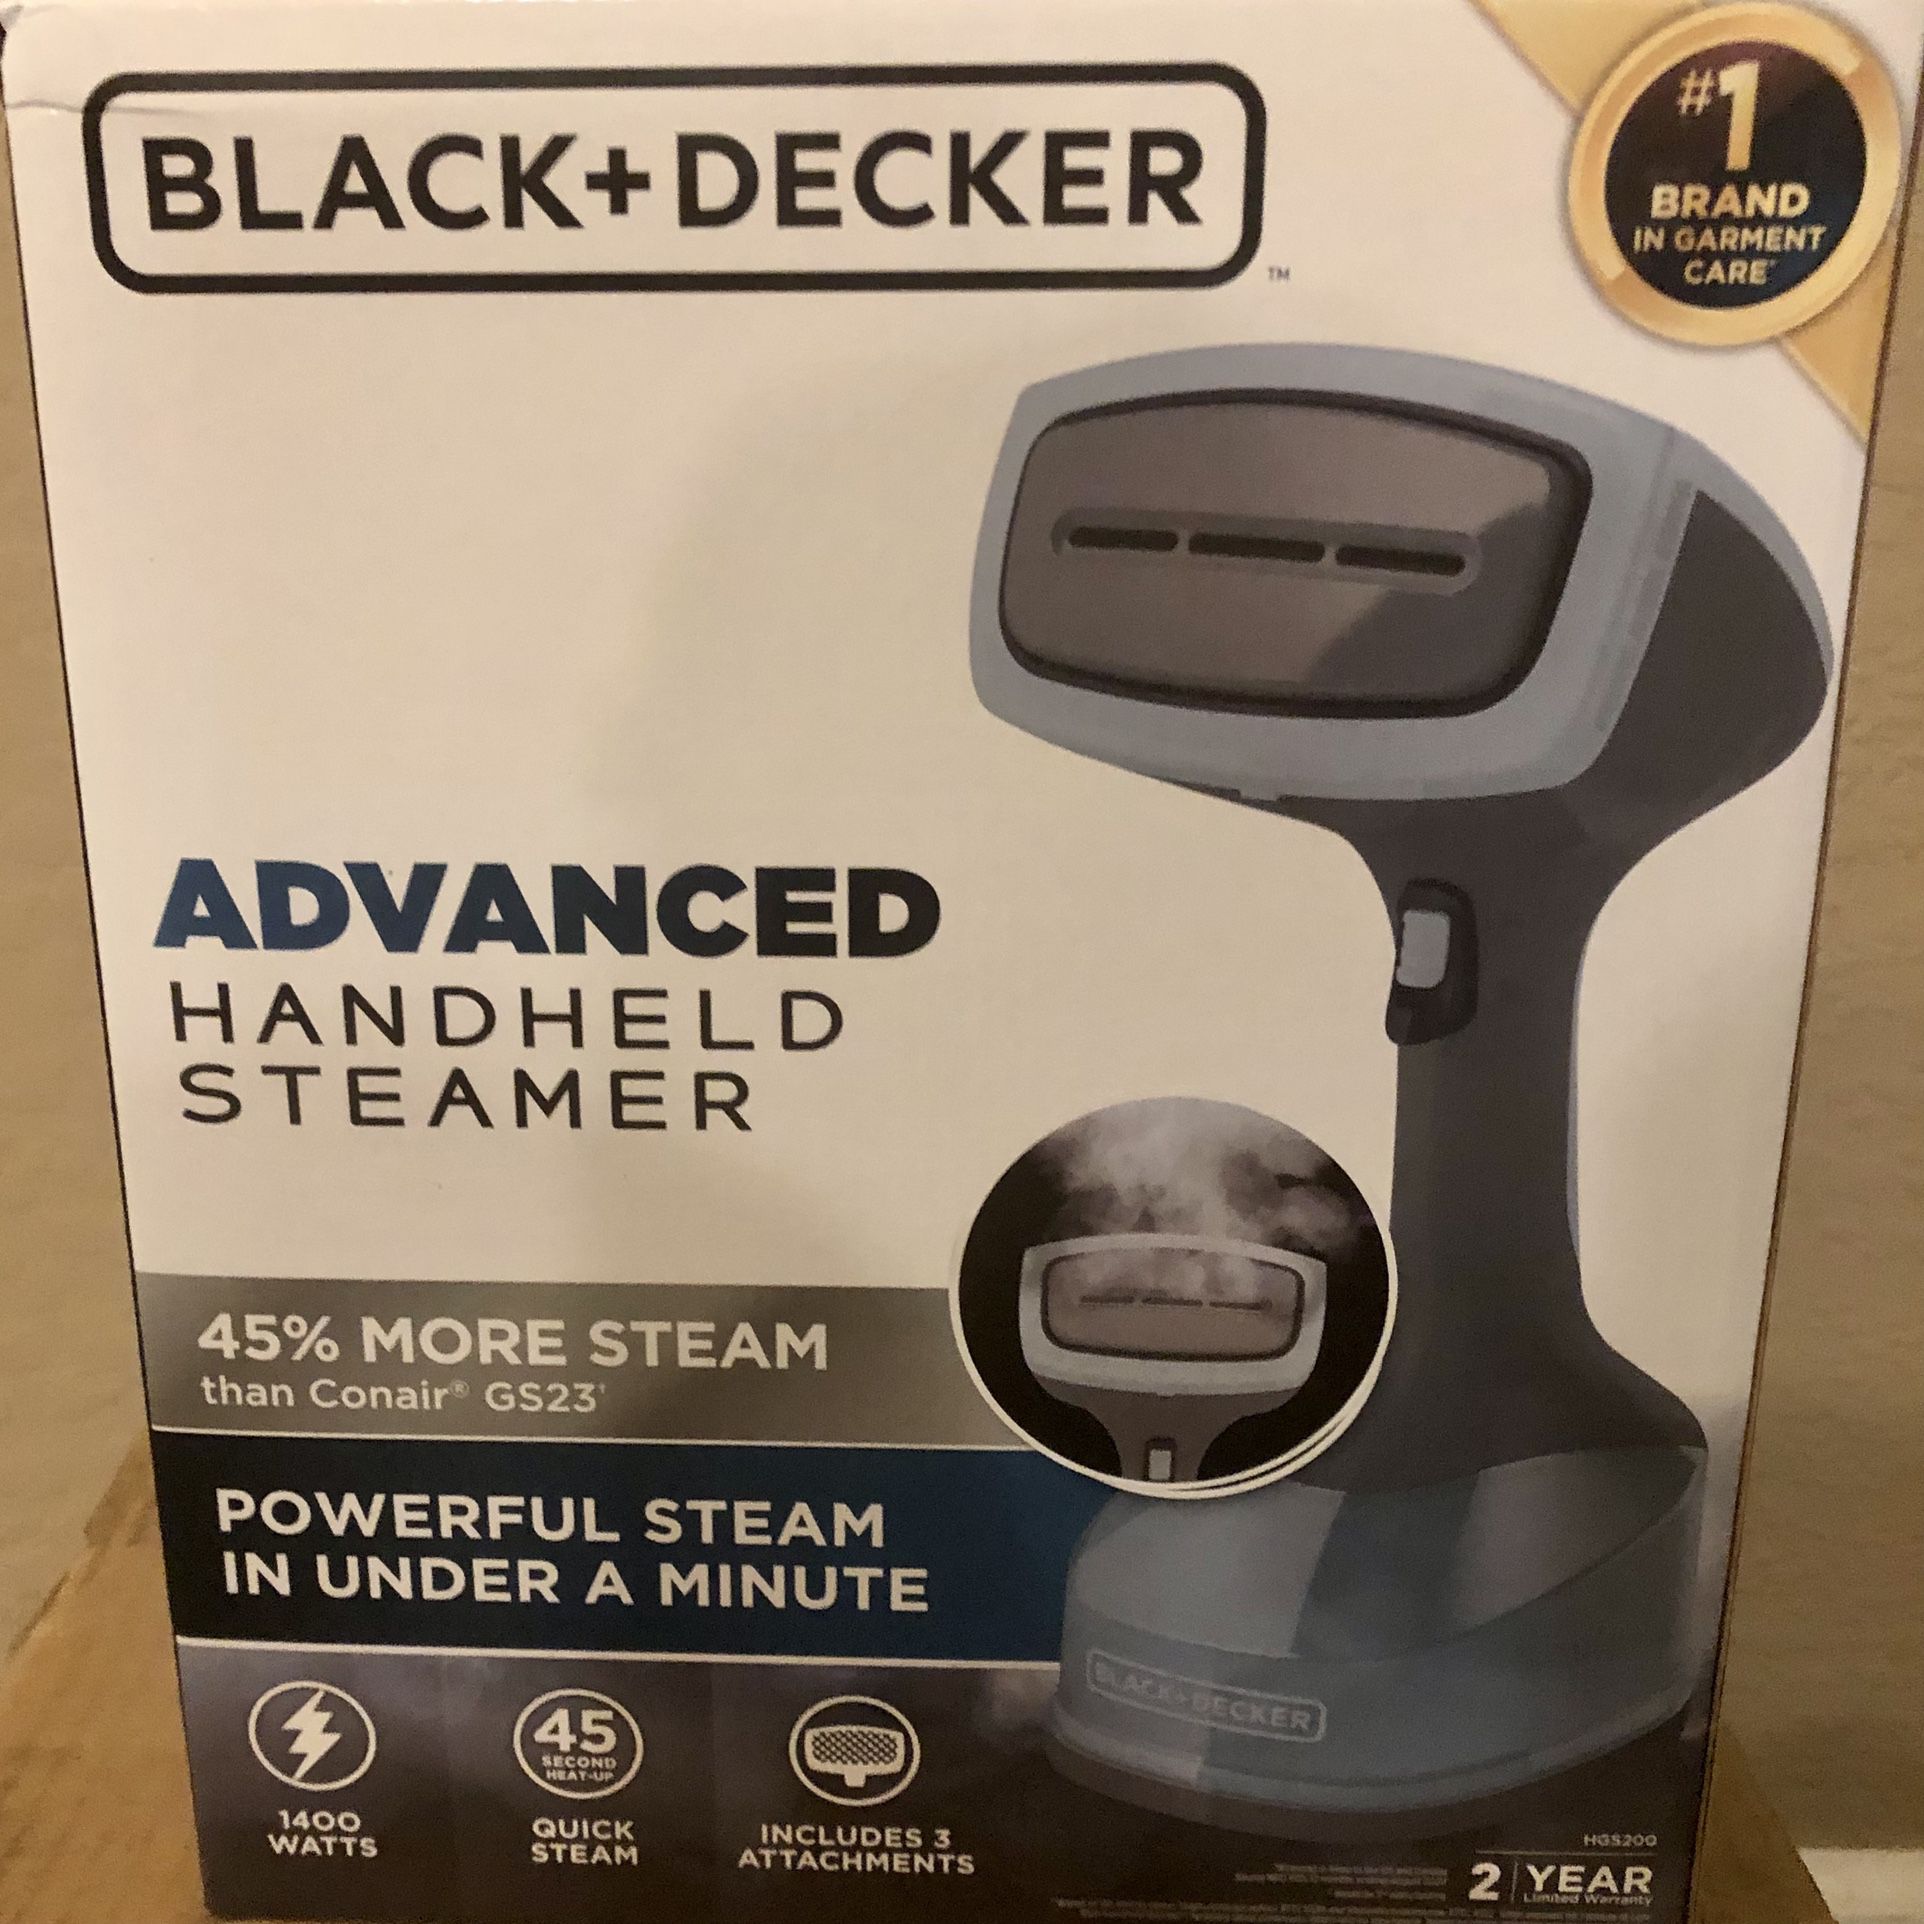 BLACK+DECKER Advanced Handheld Steamer